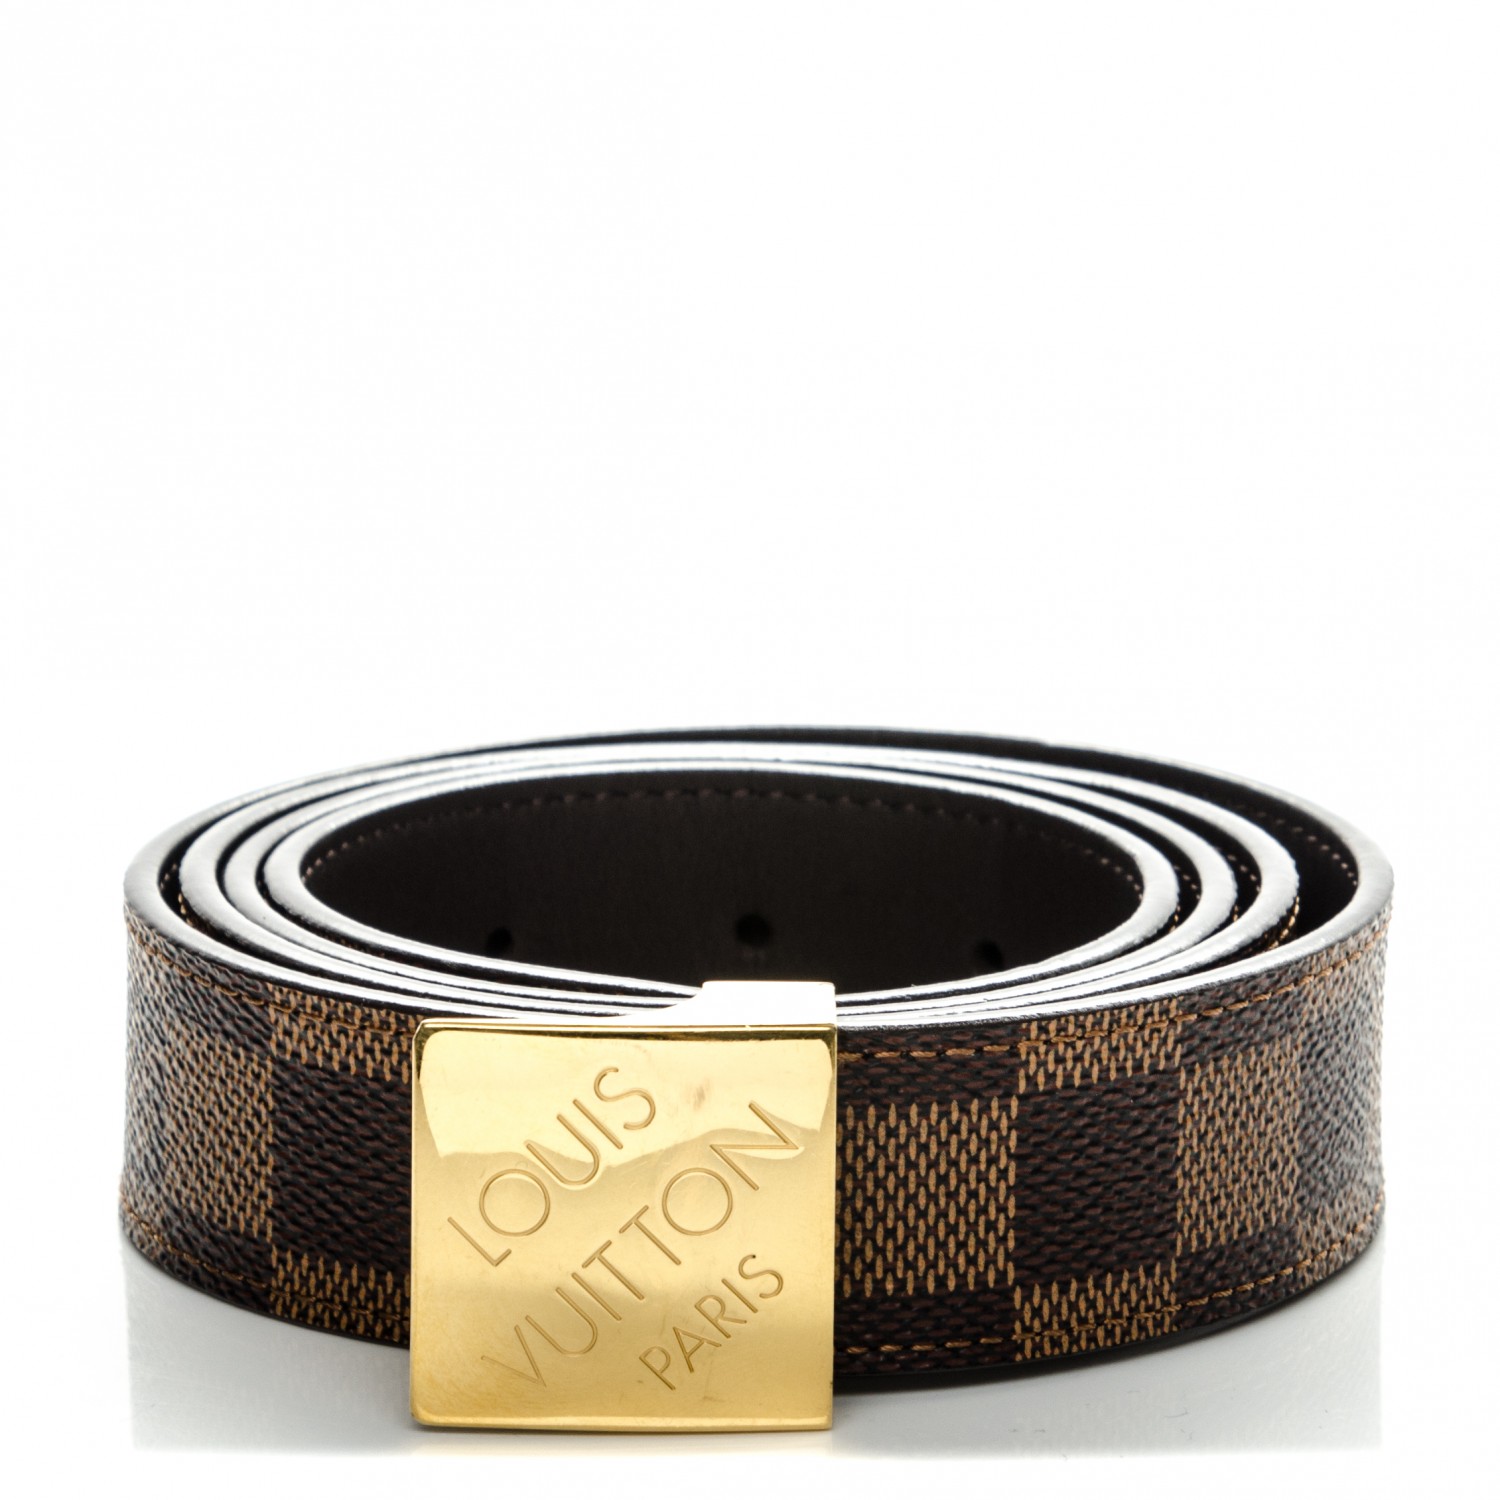 Louis Vuitton Damier Azur Belt - Size 40 - Gold Buckle (62352-1)